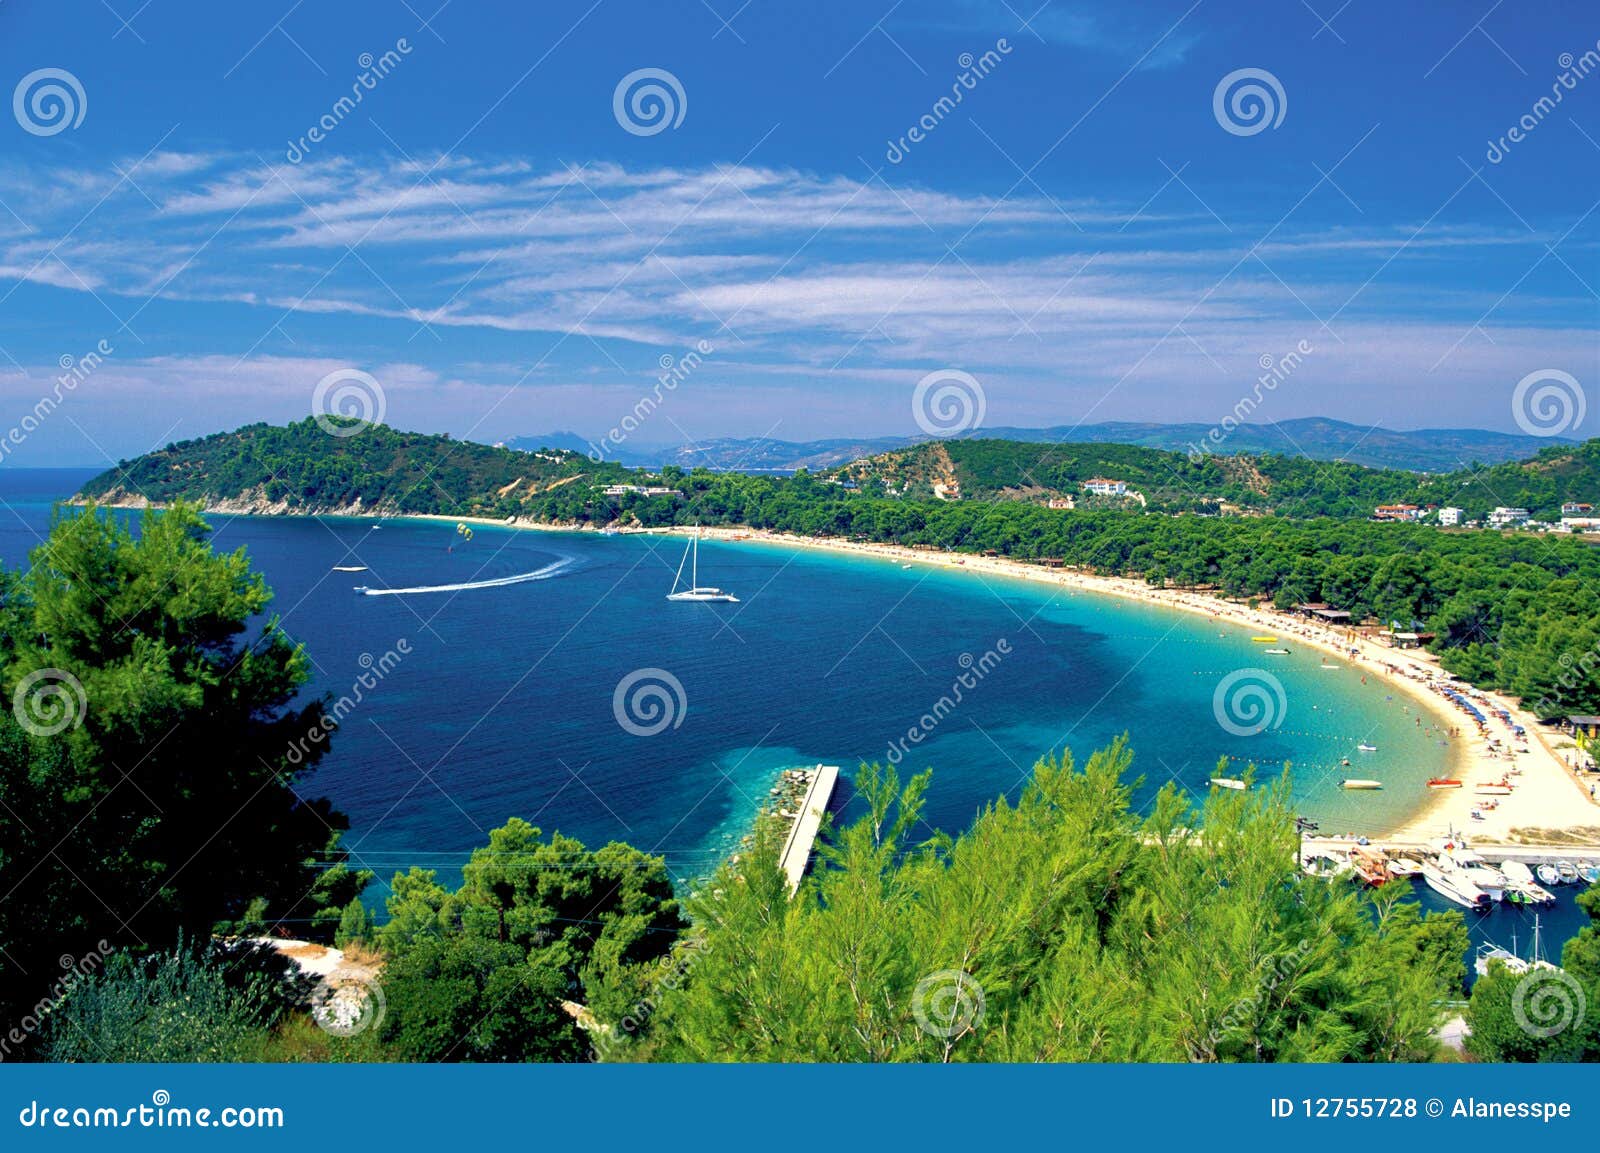 skiathos, sporades islands, greece